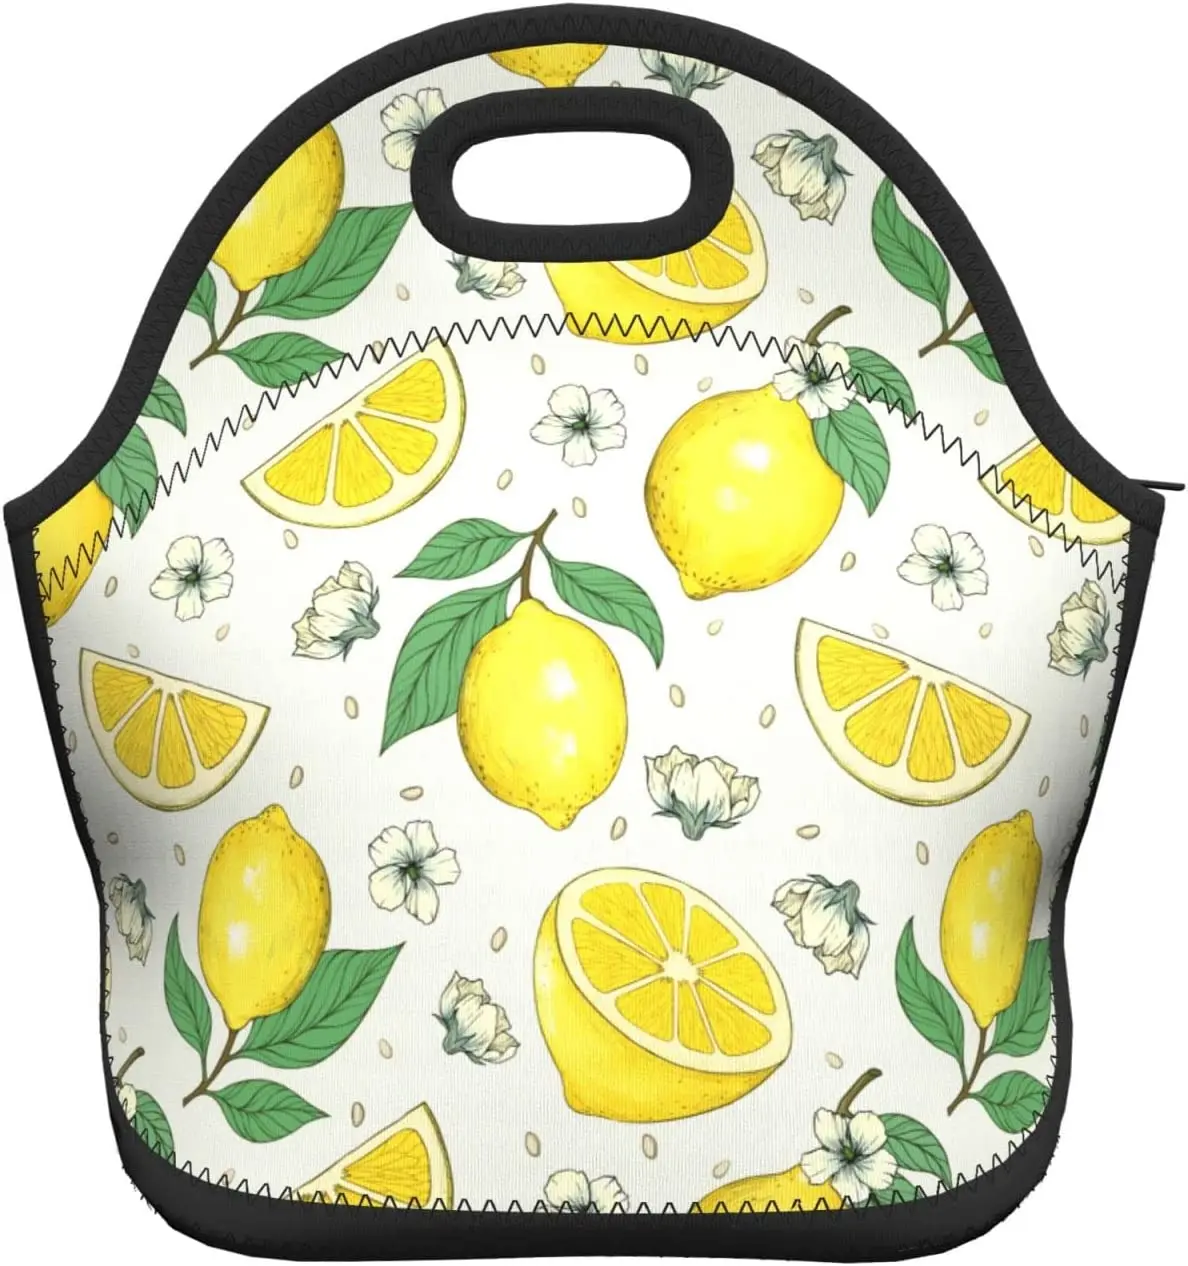 Lemons Изолированная неопреновая сумка для ланча, сумки для ланча, Переносной ланч-бокс, сумка-холодильник для ланча, сумка для пикника/катания на лодках/рыбалки/работы 5